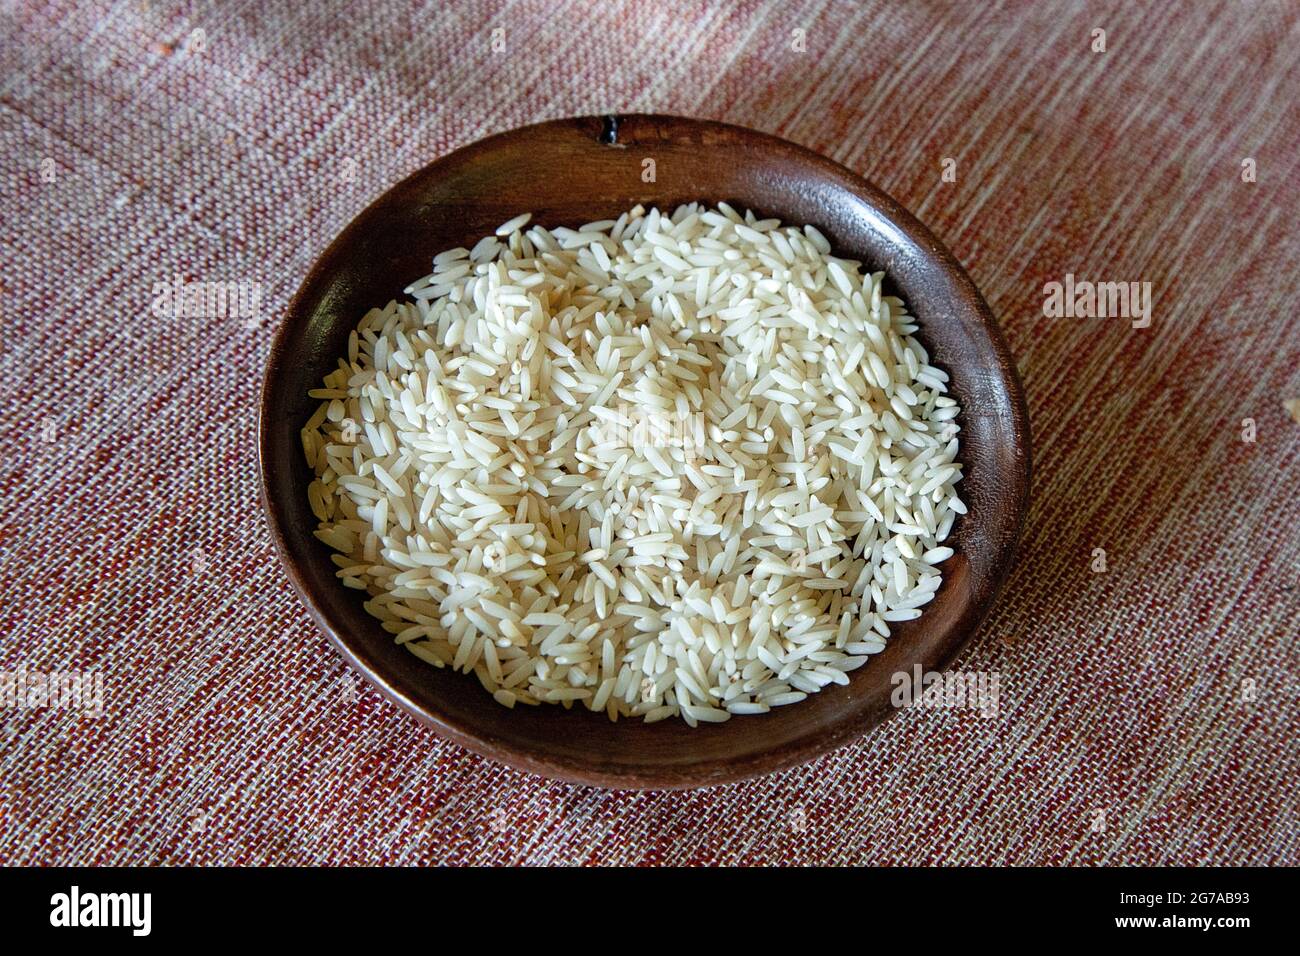 Ein wichtiger Teil der persischen Küche ist Reis, der beste Reis der Welt, der Sadri-Reis. Die Ernte findet von April bis Ende Juli statt, hauptsächlich in den Provinzen Gilan und Mazandaran. Stockfoto